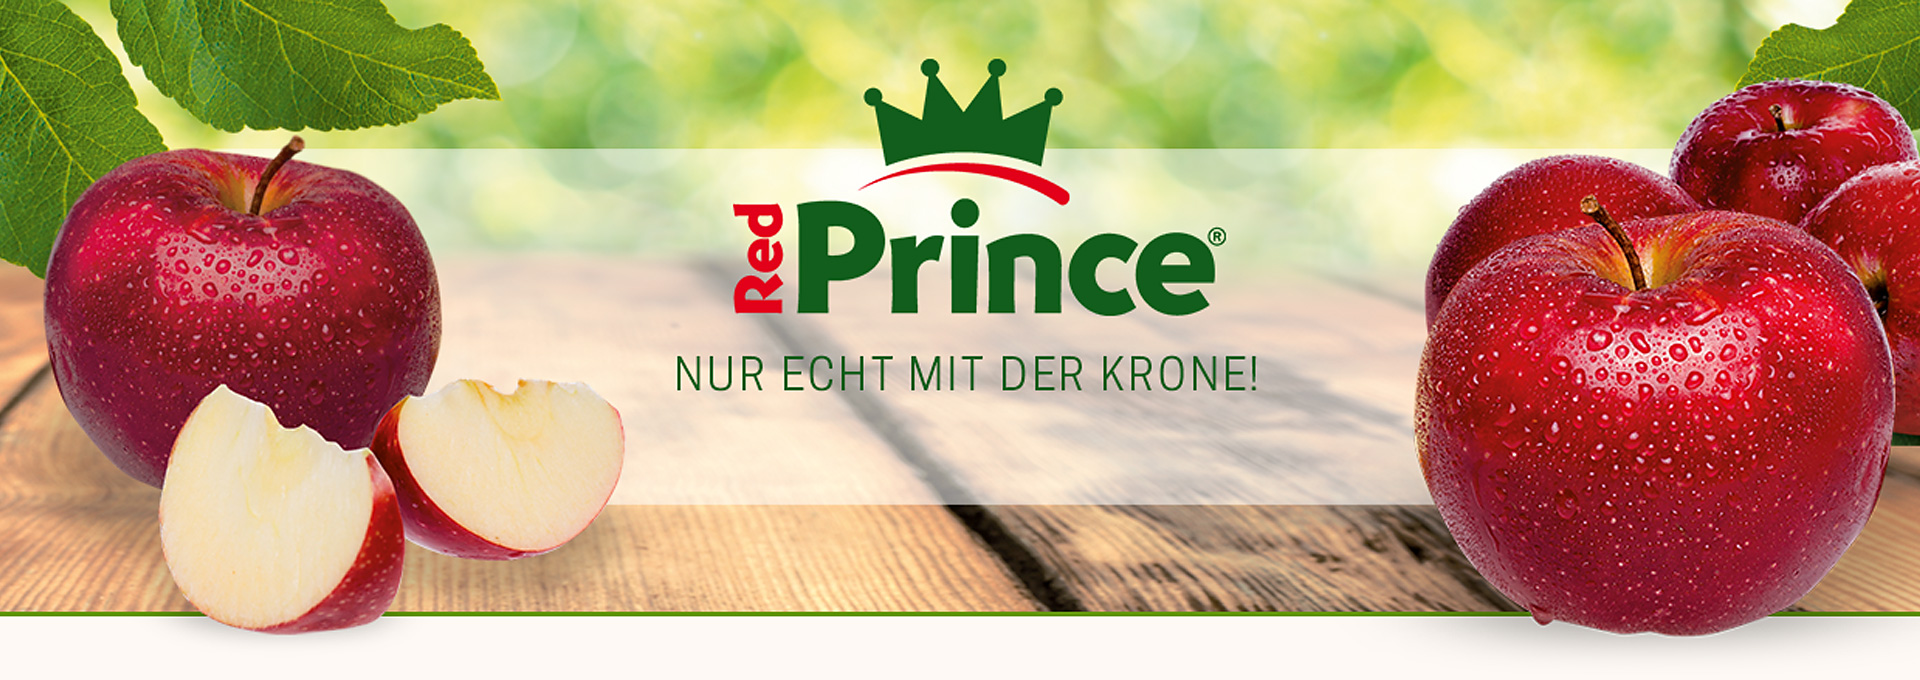 Red Prince® – Nur echt mit der Krone!